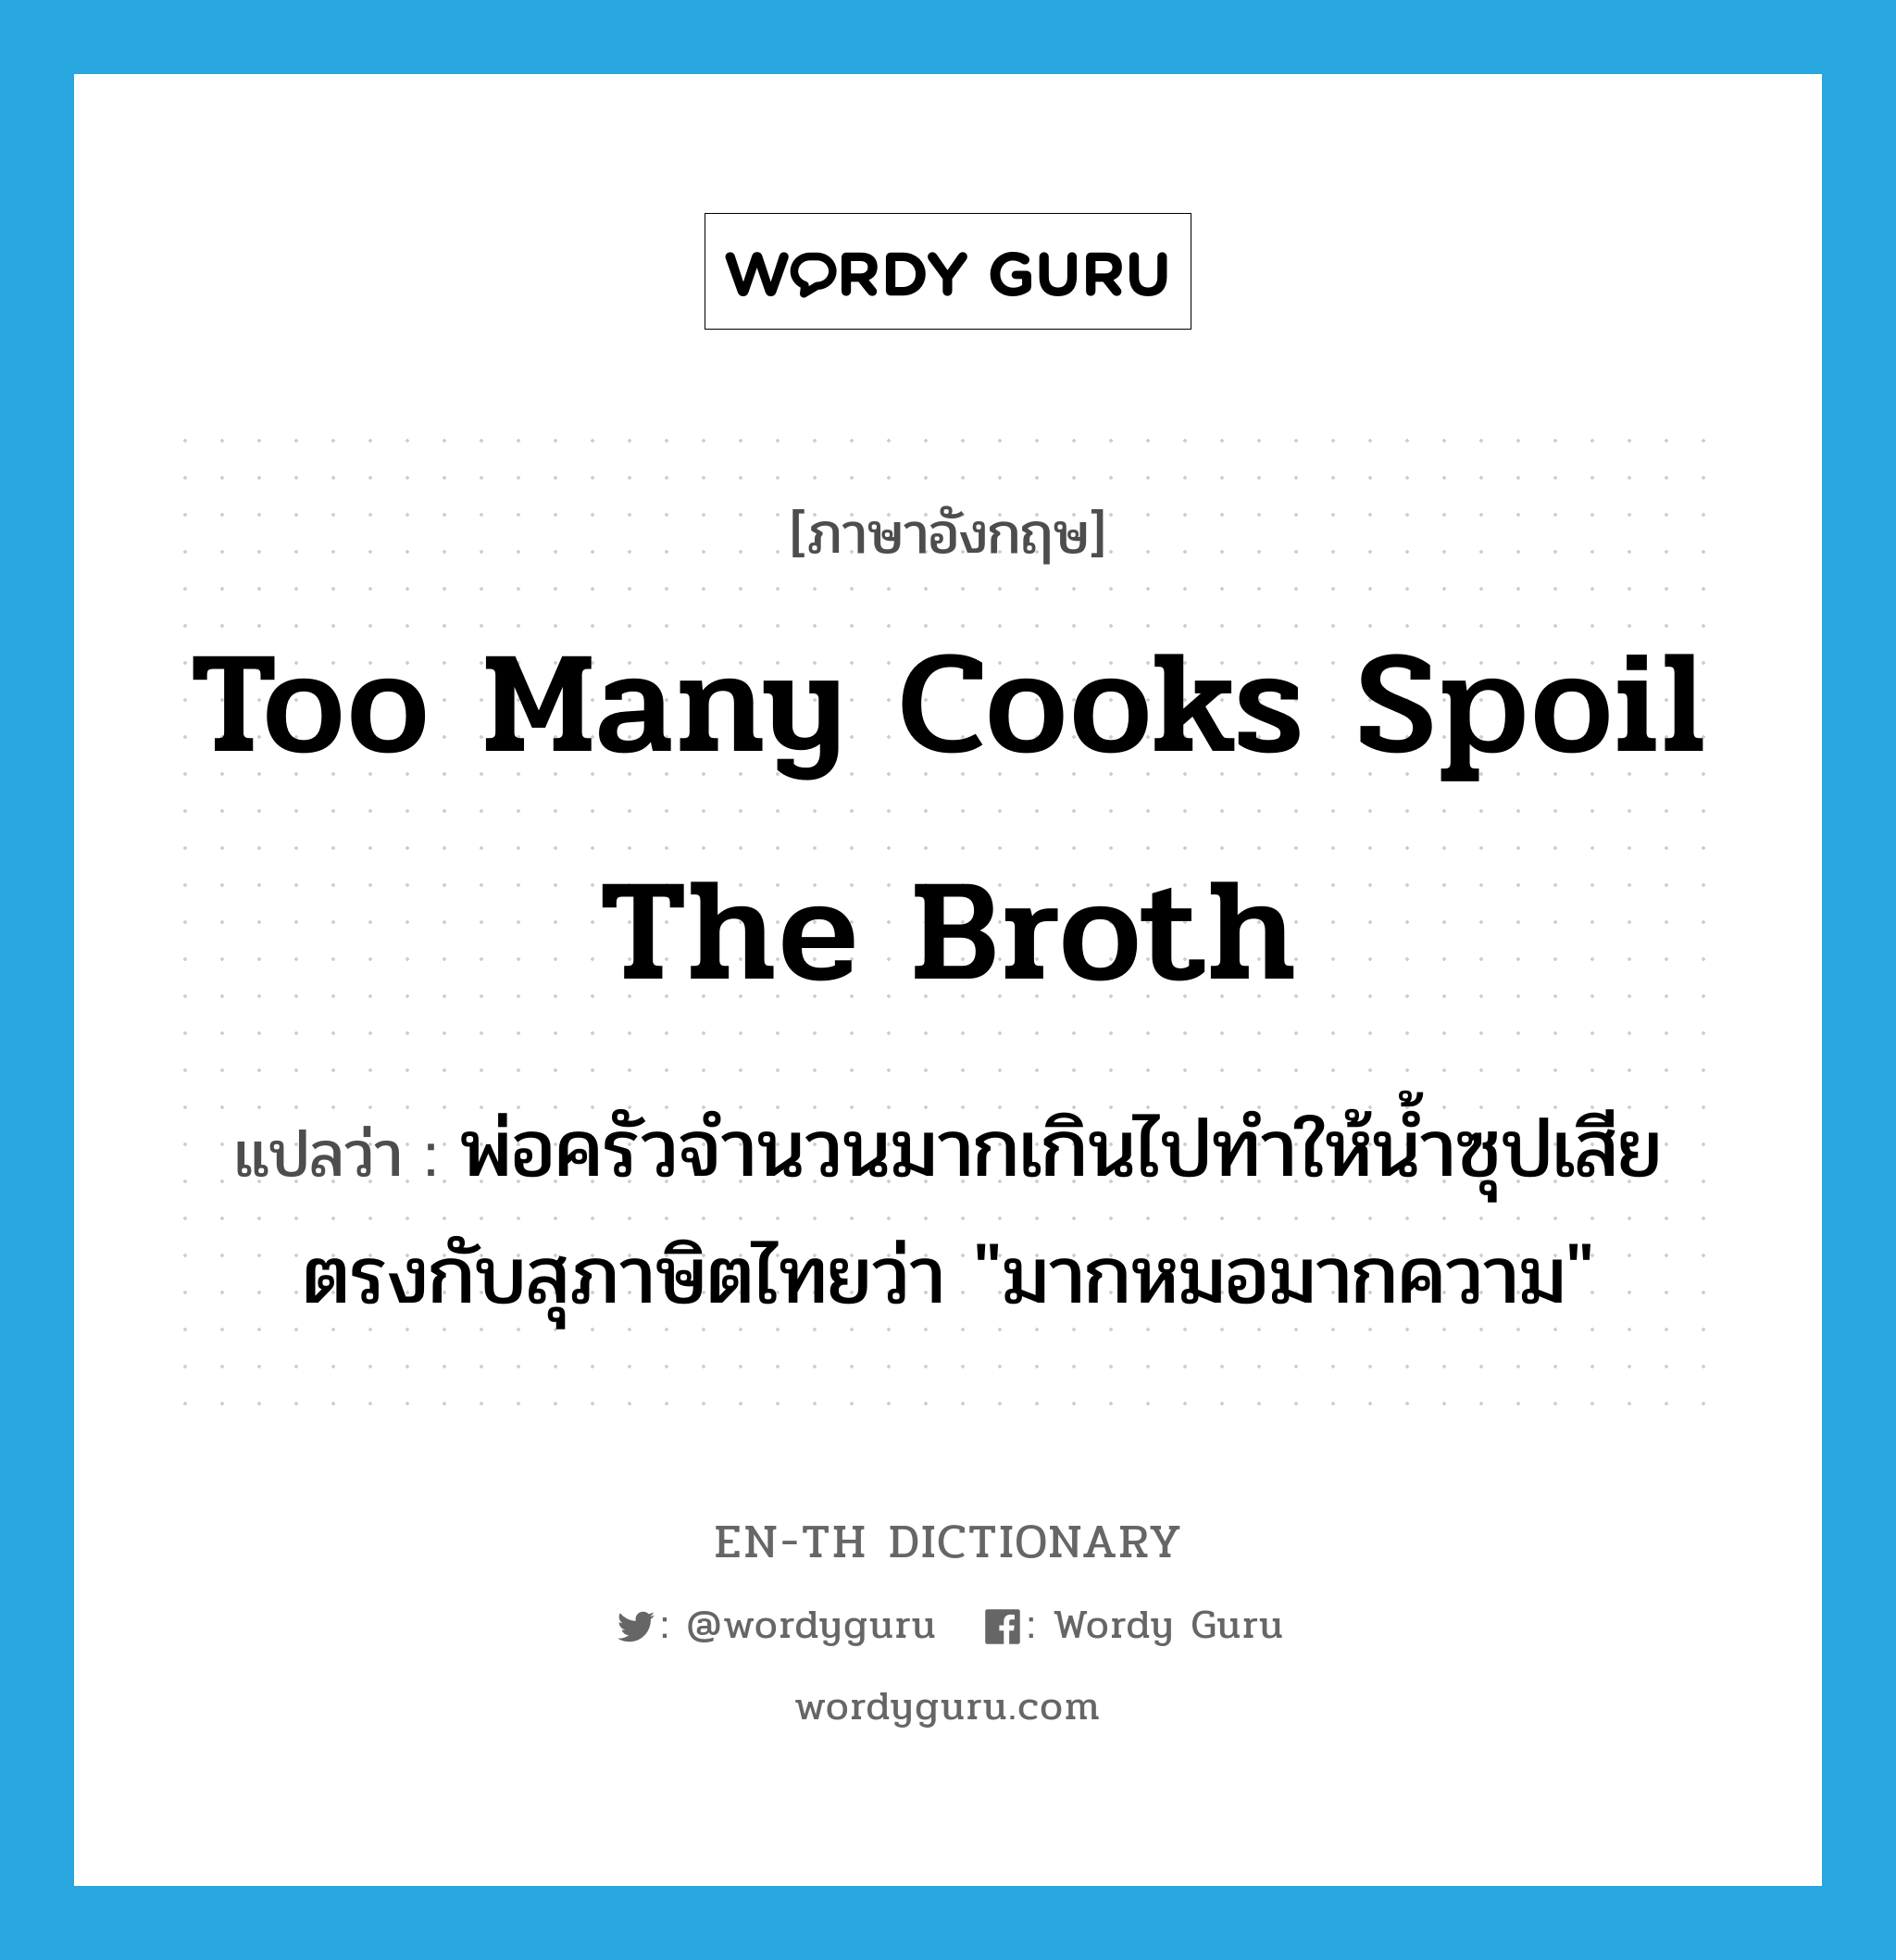 พ่อครัวจำนวนมากเกินไปทำให้น้ำซุปเสีย ตรงกับสุภาษิตไทยว่า "มากหมอมากความ" ภาษาอังกฤษ?, คำศัพท์ภาษาอังกฤษ พ่อครัวจำนวนมากเกินไปทำให้น้ำซุปเสีย ตรงกับสุภาษิตไทยว่า "มากหมอมากความ" แปลว่า Too many cooks spoil the broth ประเภท IDM หมวด IDM